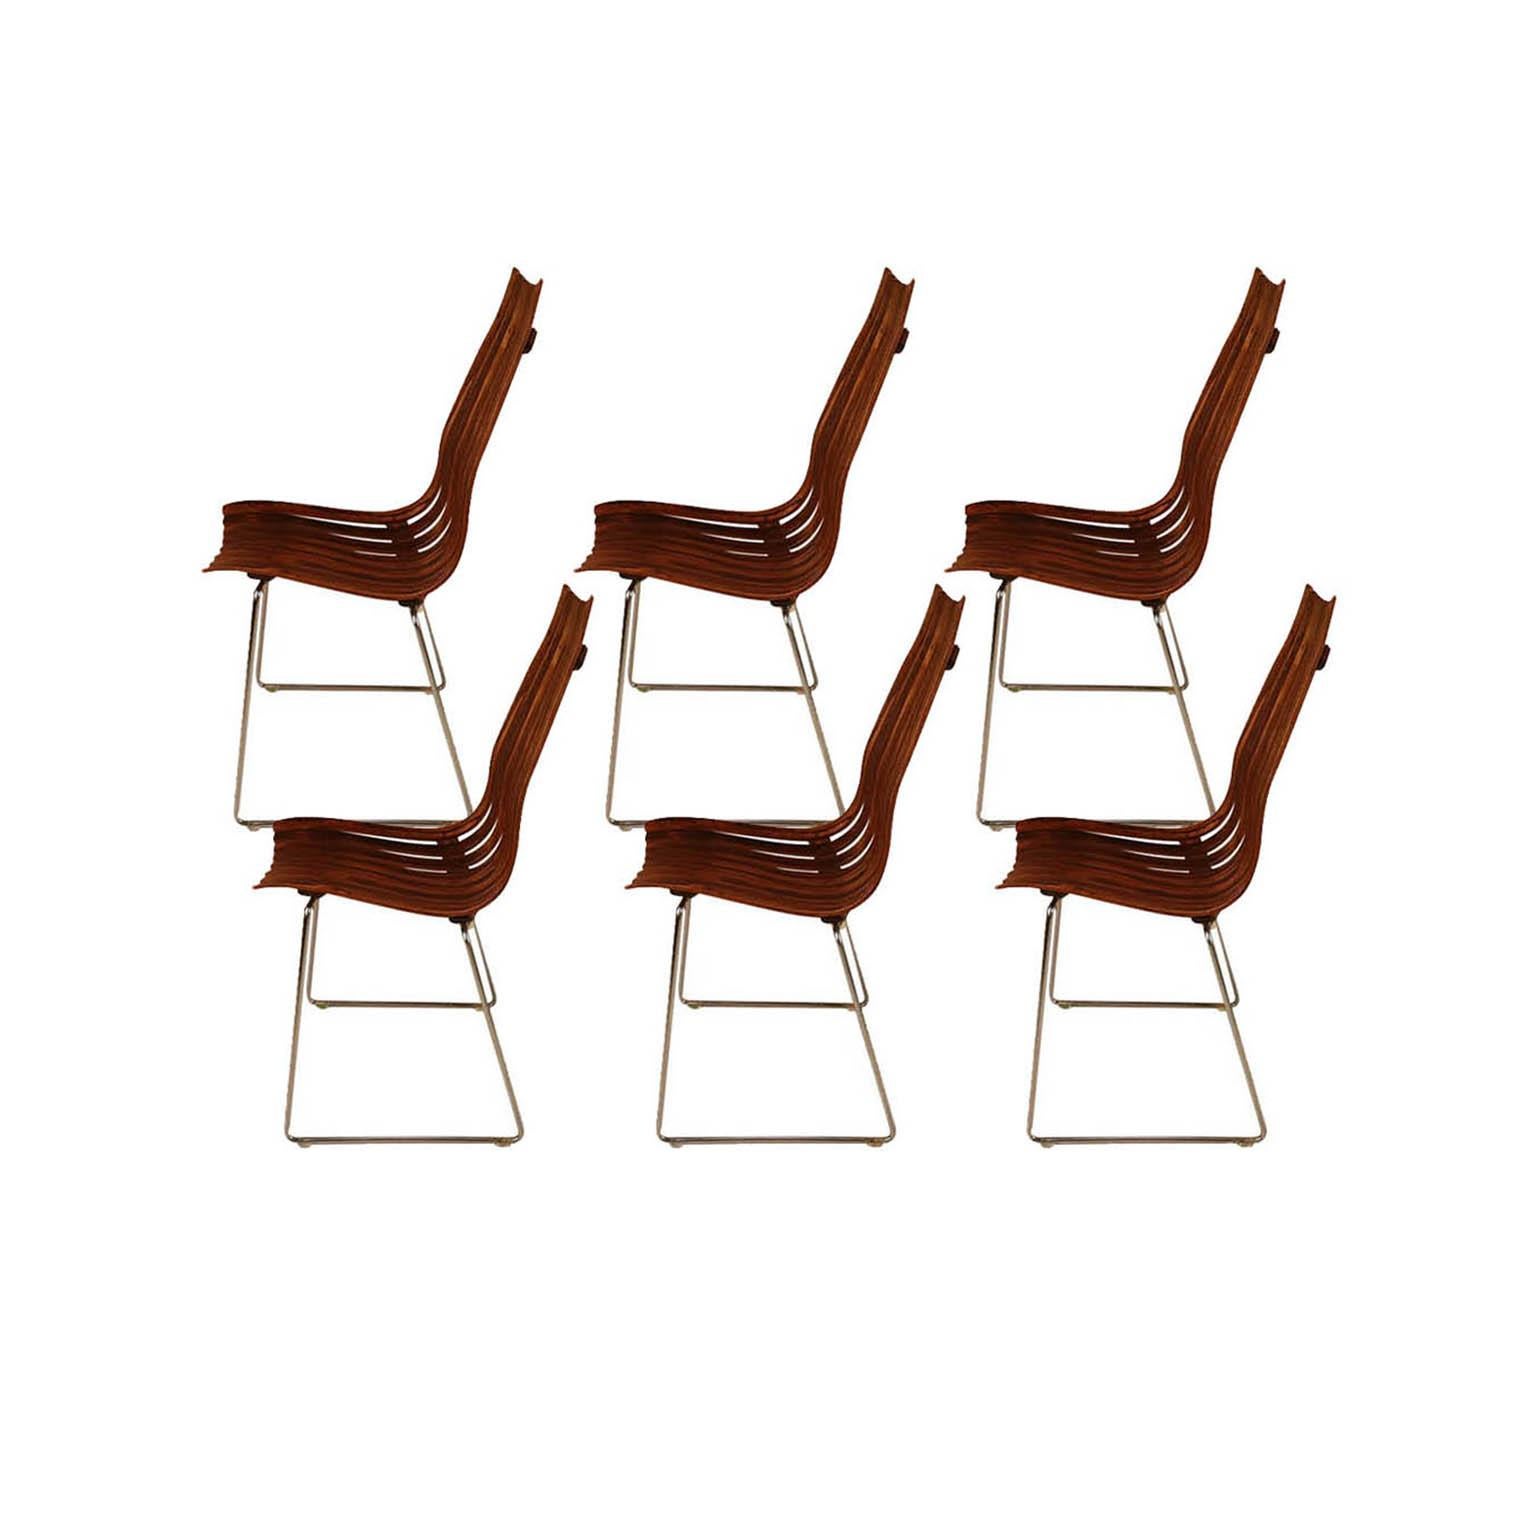 Ein seltener Satz von sechs atemberaubenden, modernen, stapelbaren Esszimmerstühlen mit hoher Rückenlehne aus Palisanderholz aus der Serie 